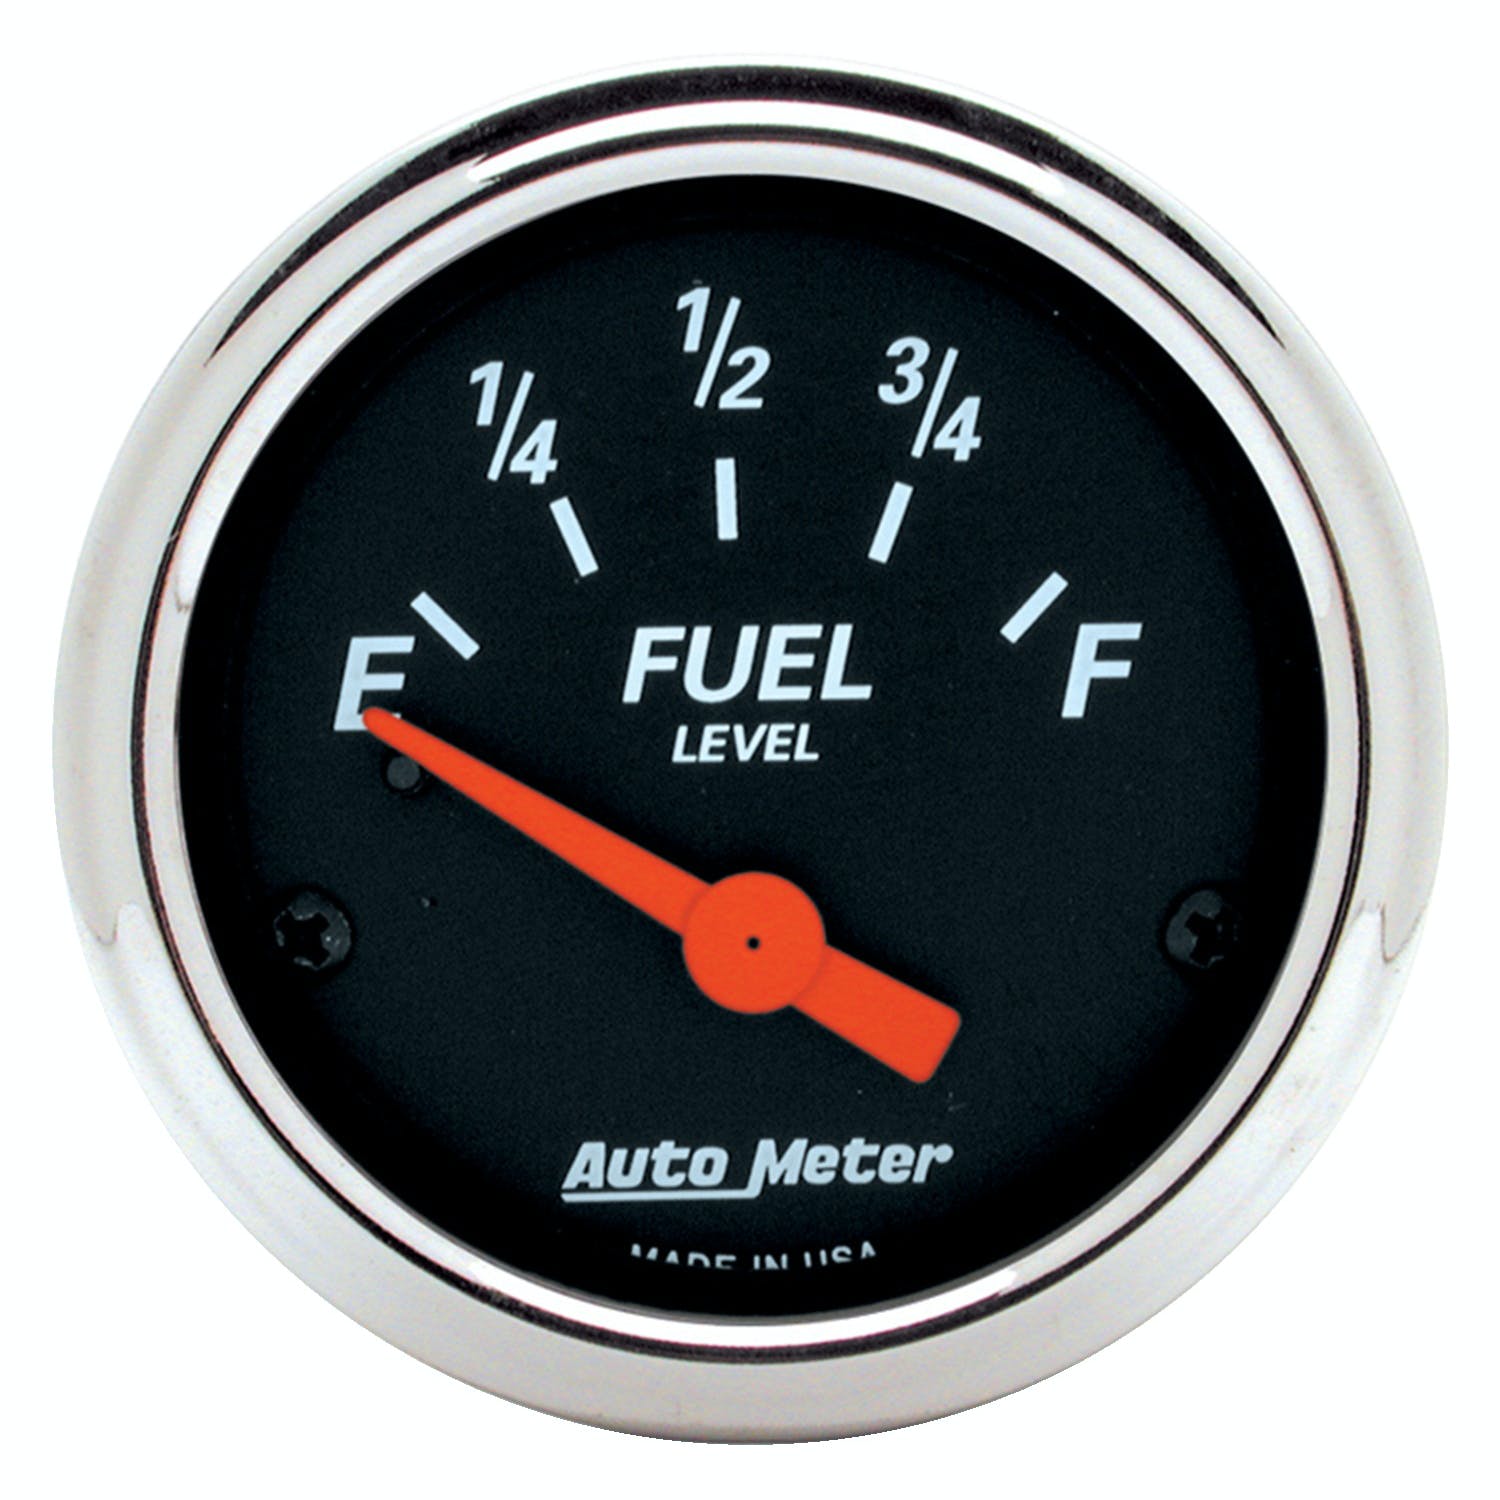 AutoMeter Products 1425 Designer Black Fuel Level 2-1/16in Gauge 0 E/30 F Chrome Bezel